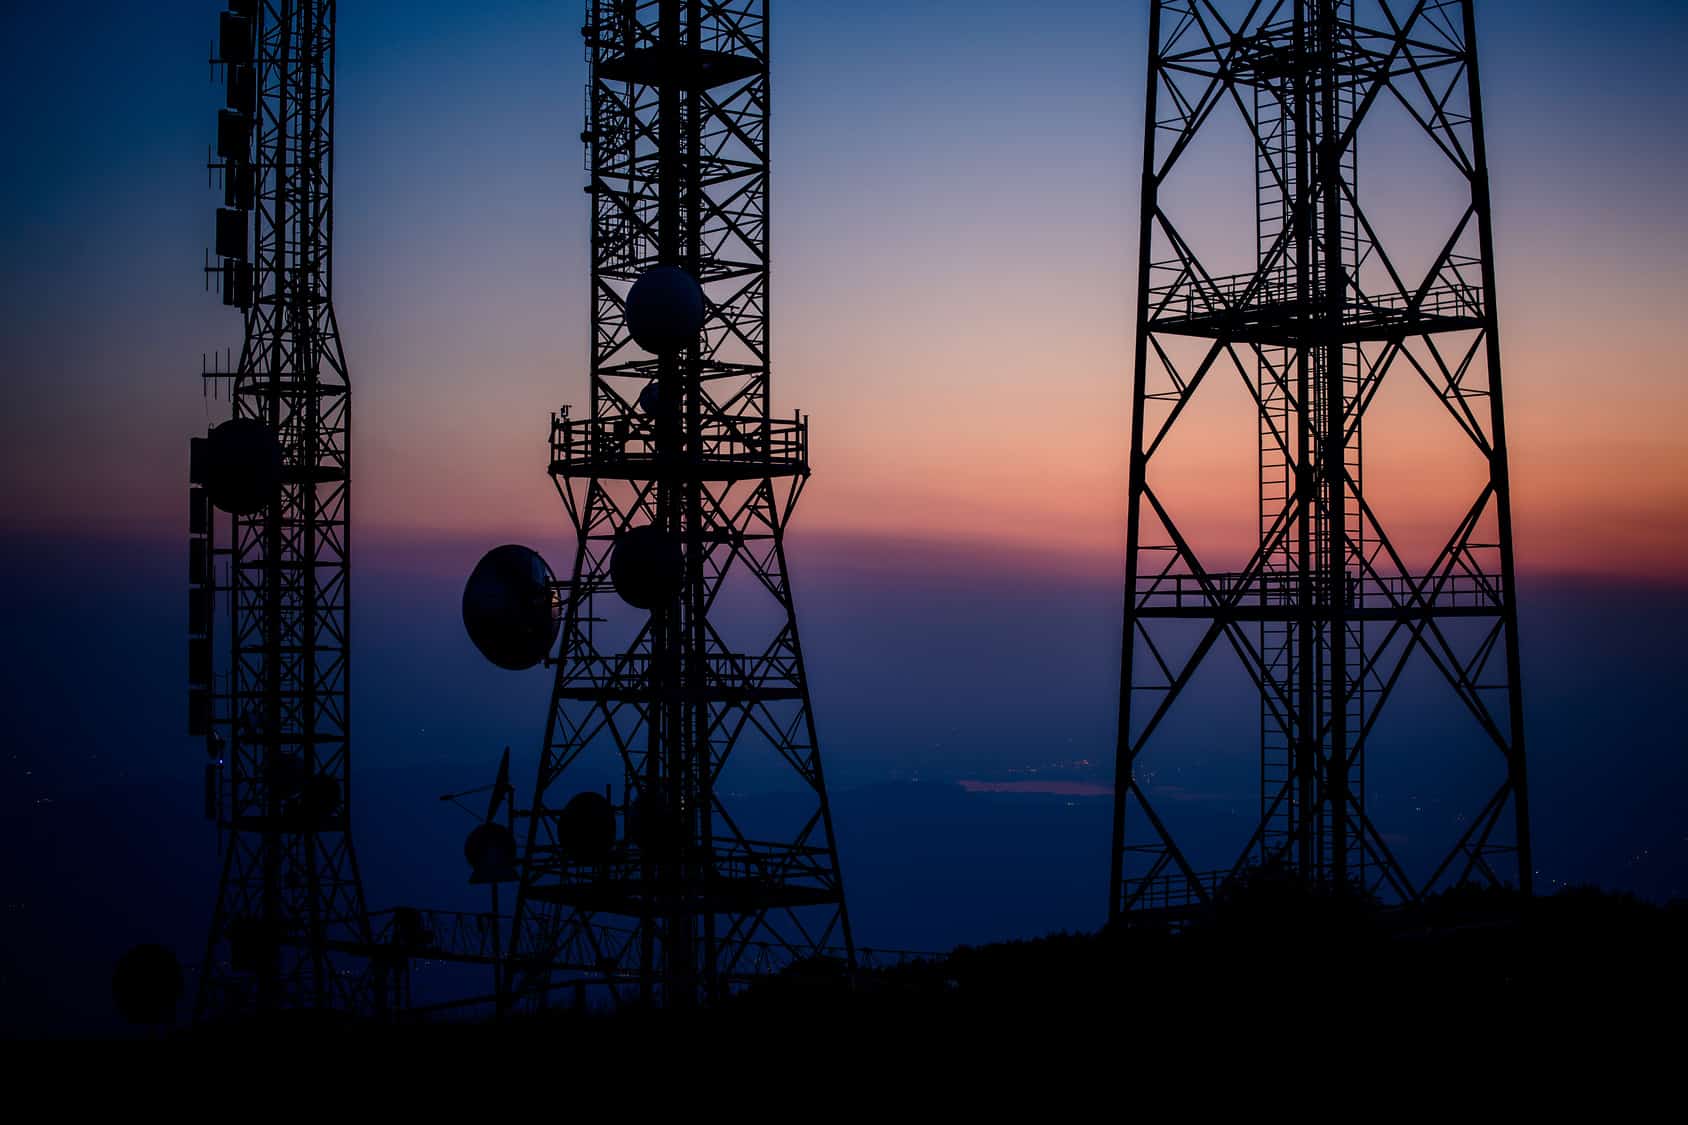 El IFT entregó los títulos de concesión a los cinco participantes ganadores en la licitación pública para concesionar el uso, aprovechamiento y explotación comercial de 10 MHz de espectro radioeléctrico disponibles en la banda 440-450 MHz.